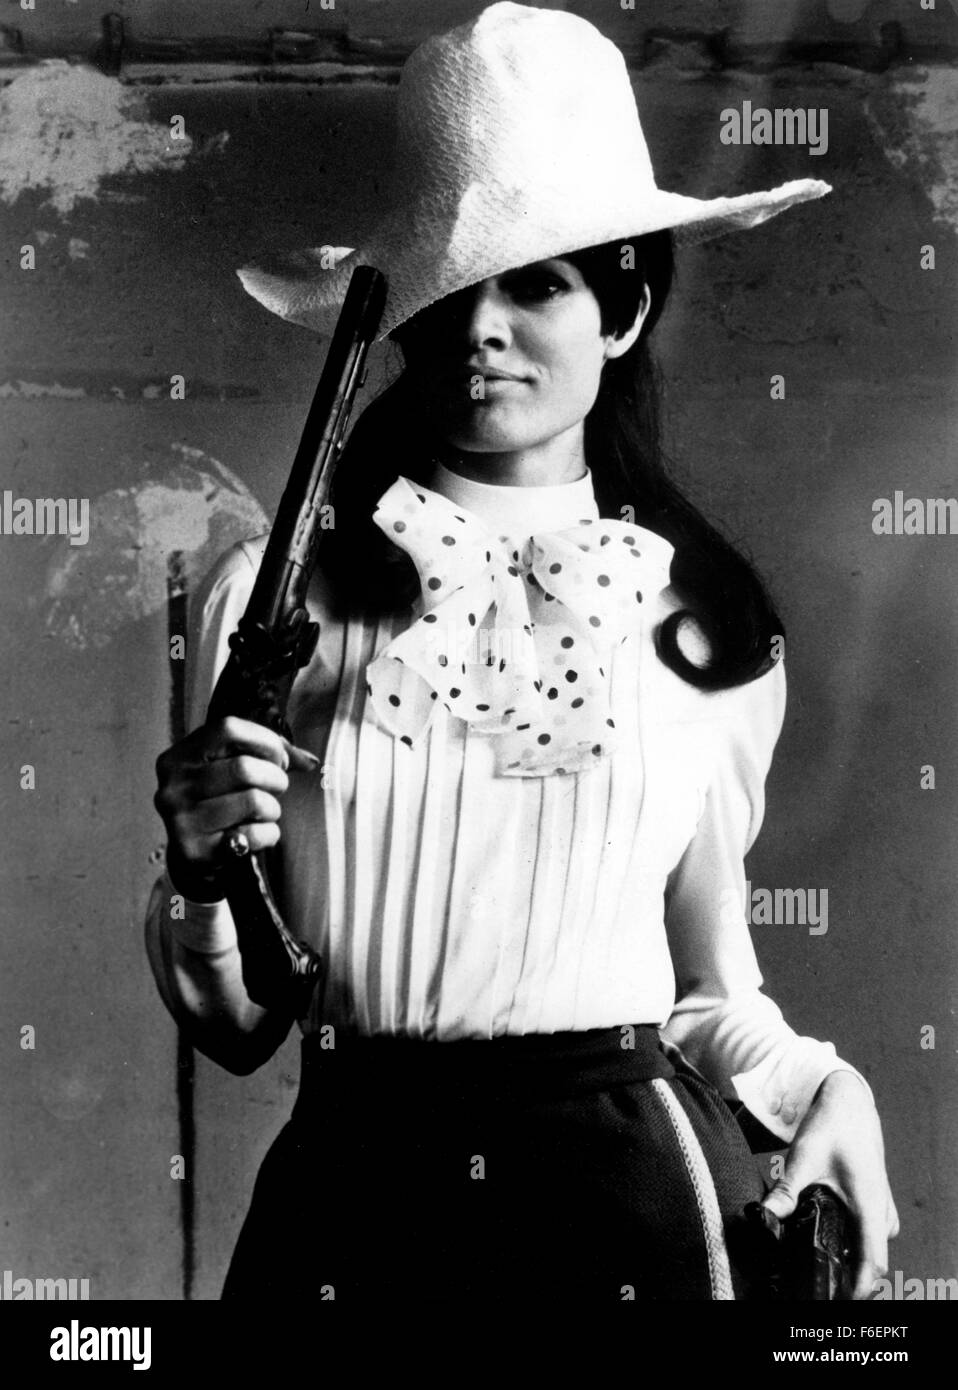 Nov. 24, 1965 - Messico - la famosa attrice francese Brigitte Bardot appare nel suo ultimo film "Viva Maria" realizzato in Messico. A Paris couturier è ora lanciando un "Viva Maria" vestito (meno la pistola e il cappello del corso). (Credito Immagine: c KEYSTONE Pictures USA) Foto Stock